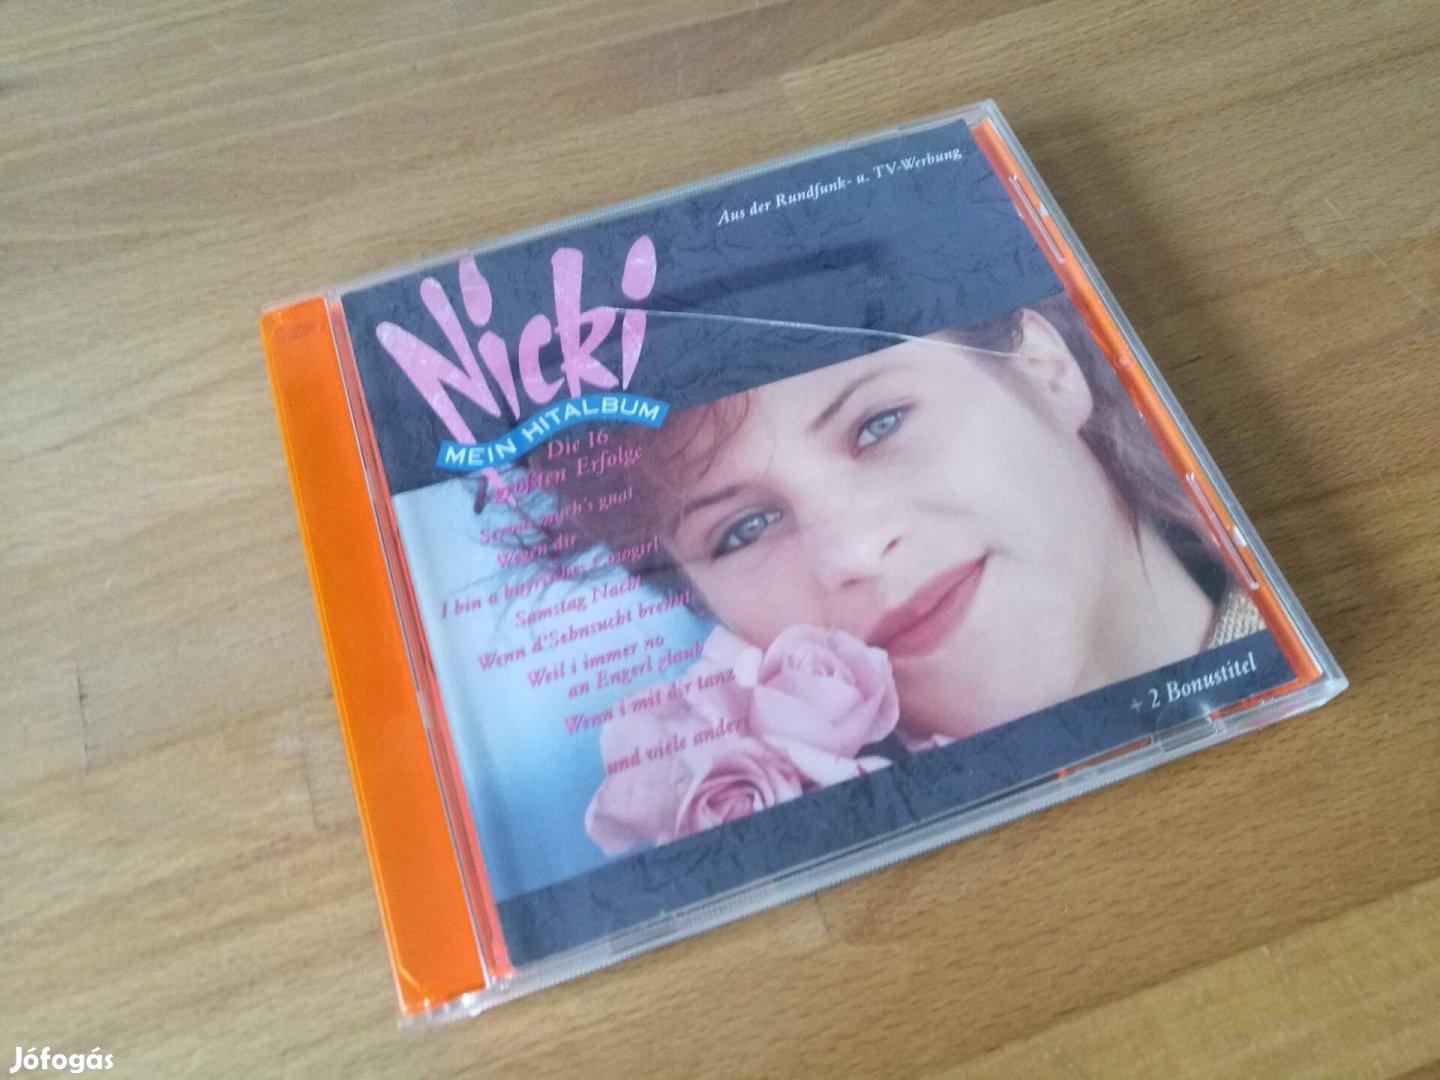 Nicki - Mein Hitalbum (Virgin Piccobello Records, Germany, 1989, CD)